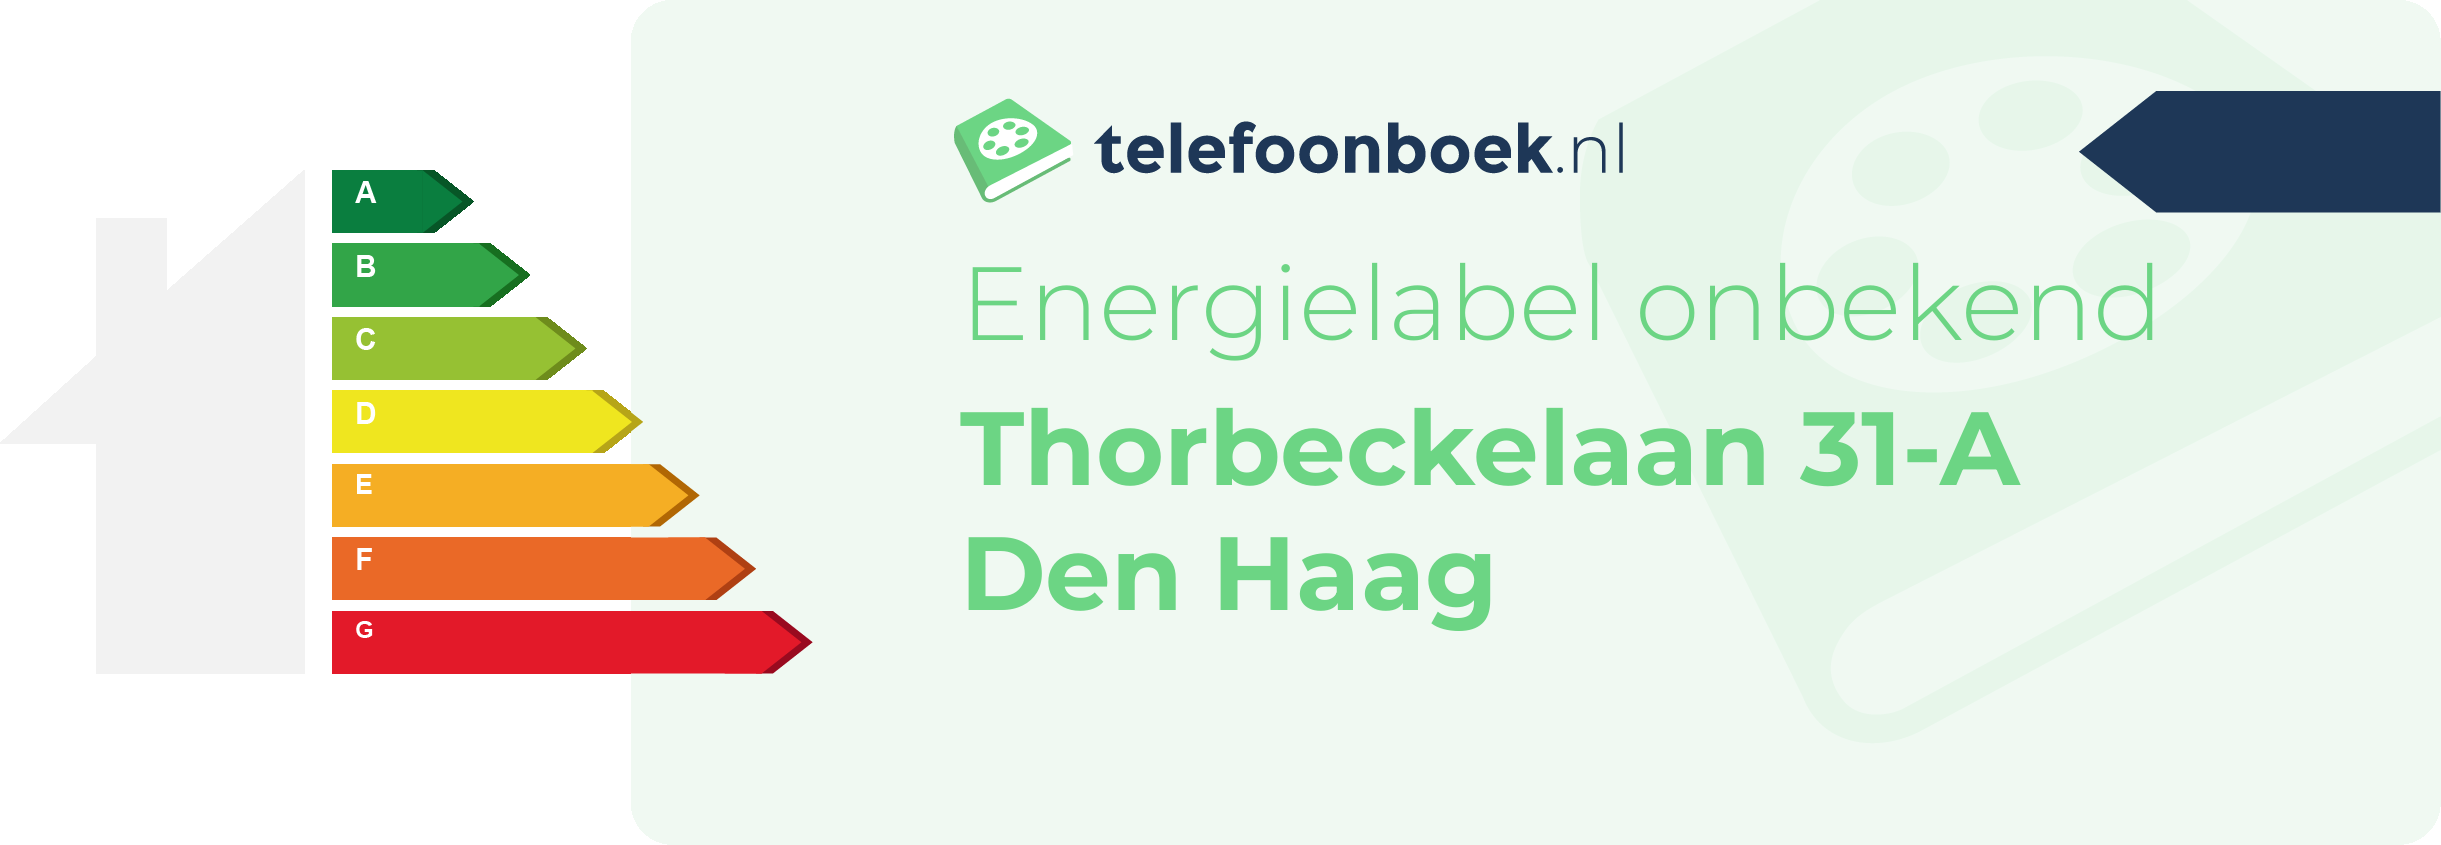 Energielabel Thorbeckelaan 31-A Den Haag